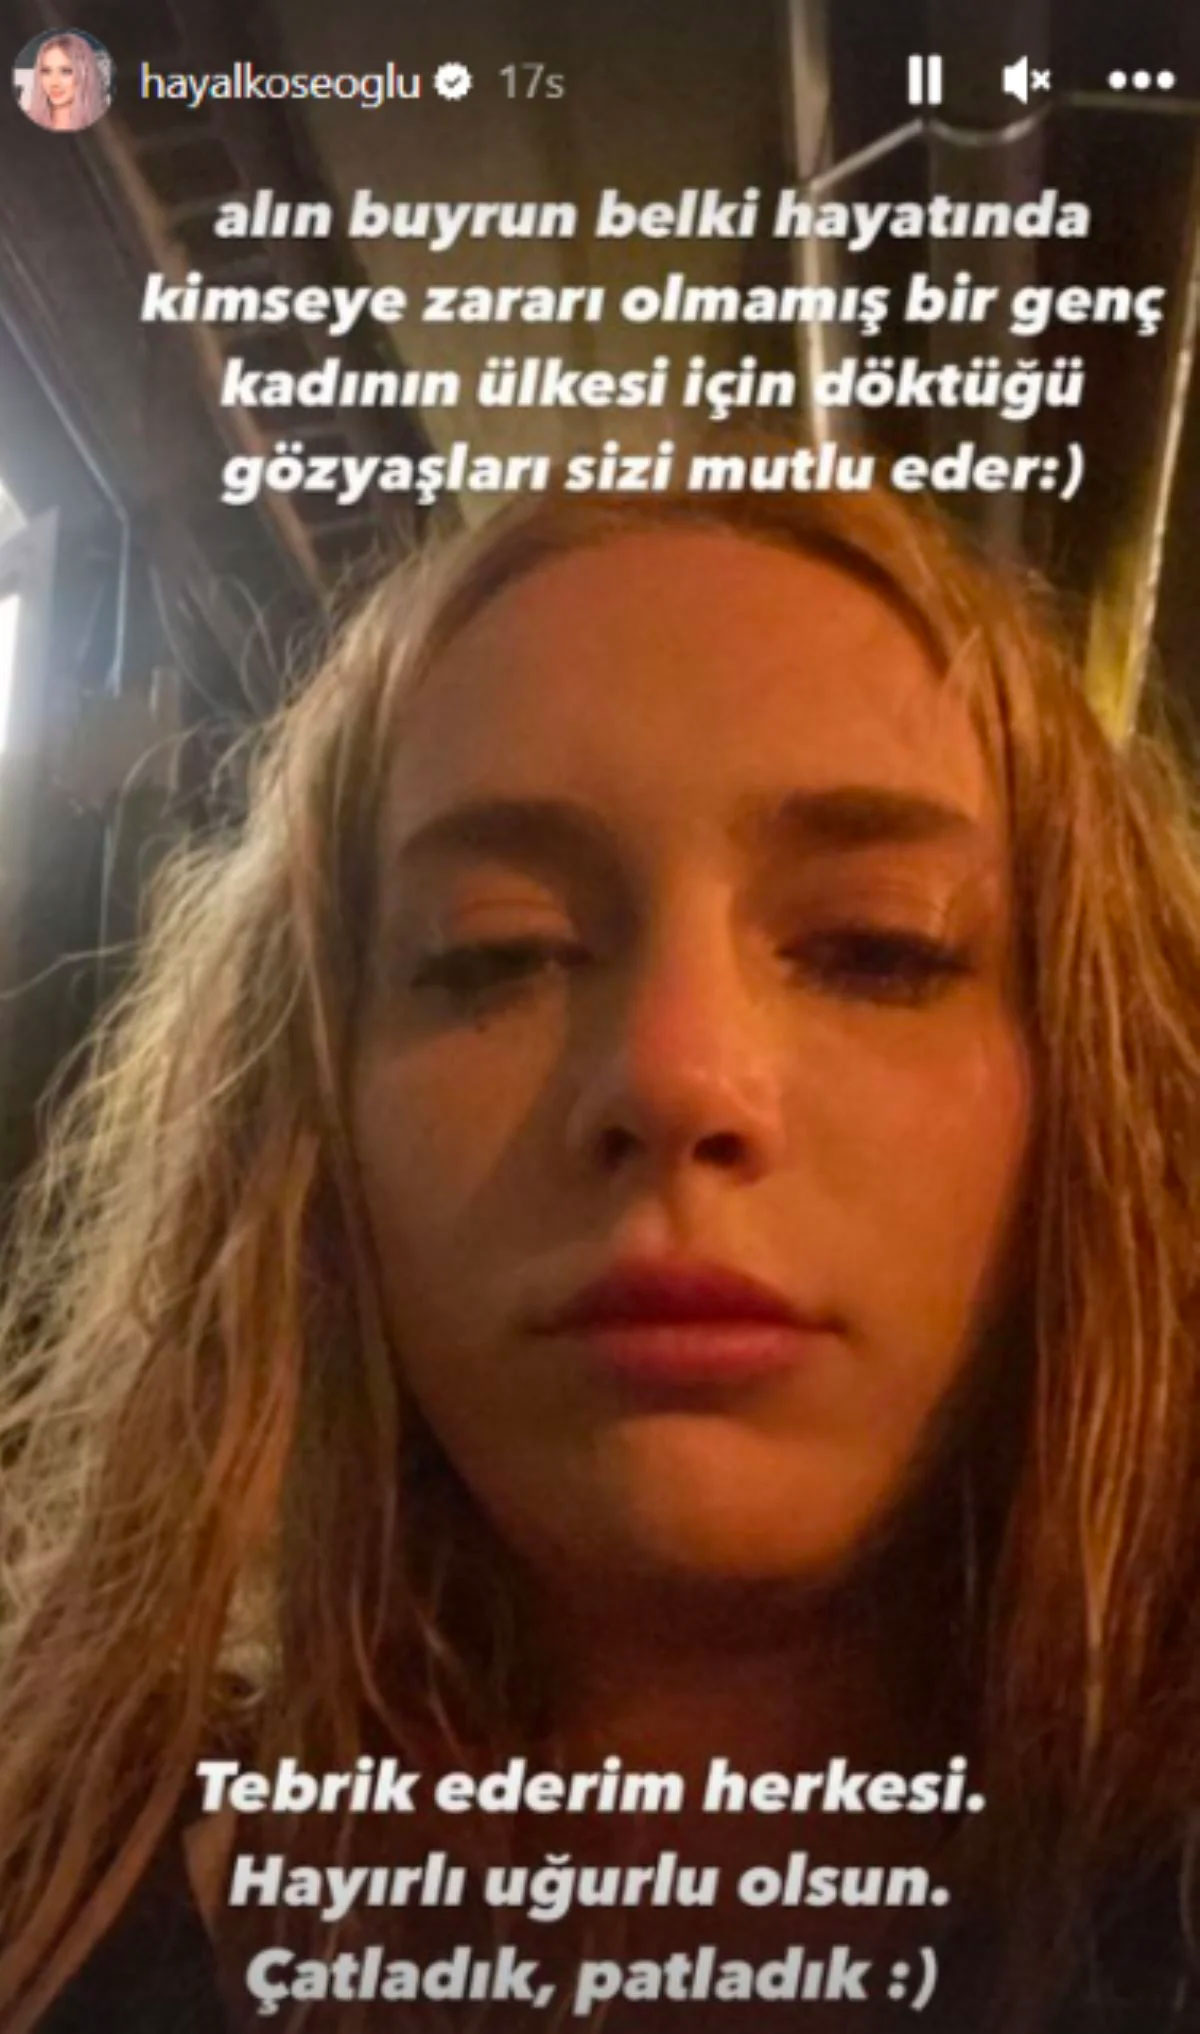 Ünlü oyuncu Hayal Köseoğlu seçimin ardından gözyaşlarıyla isyan etti: "Size iki çift lafım var"